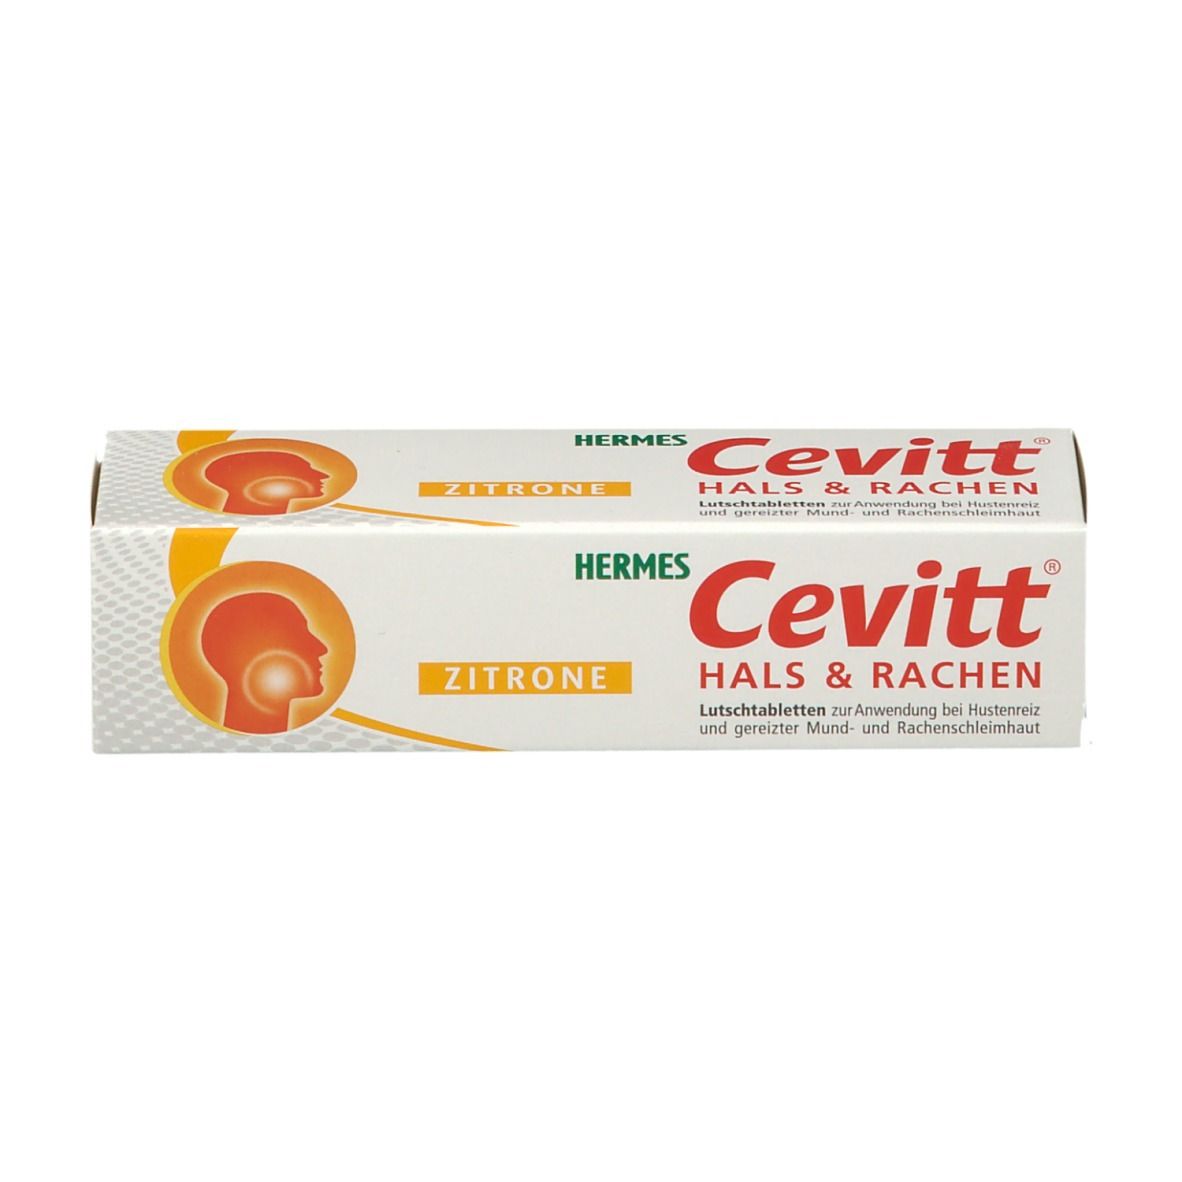 Cevitt® Hals & Rachen Lutschtabletten Zitrone